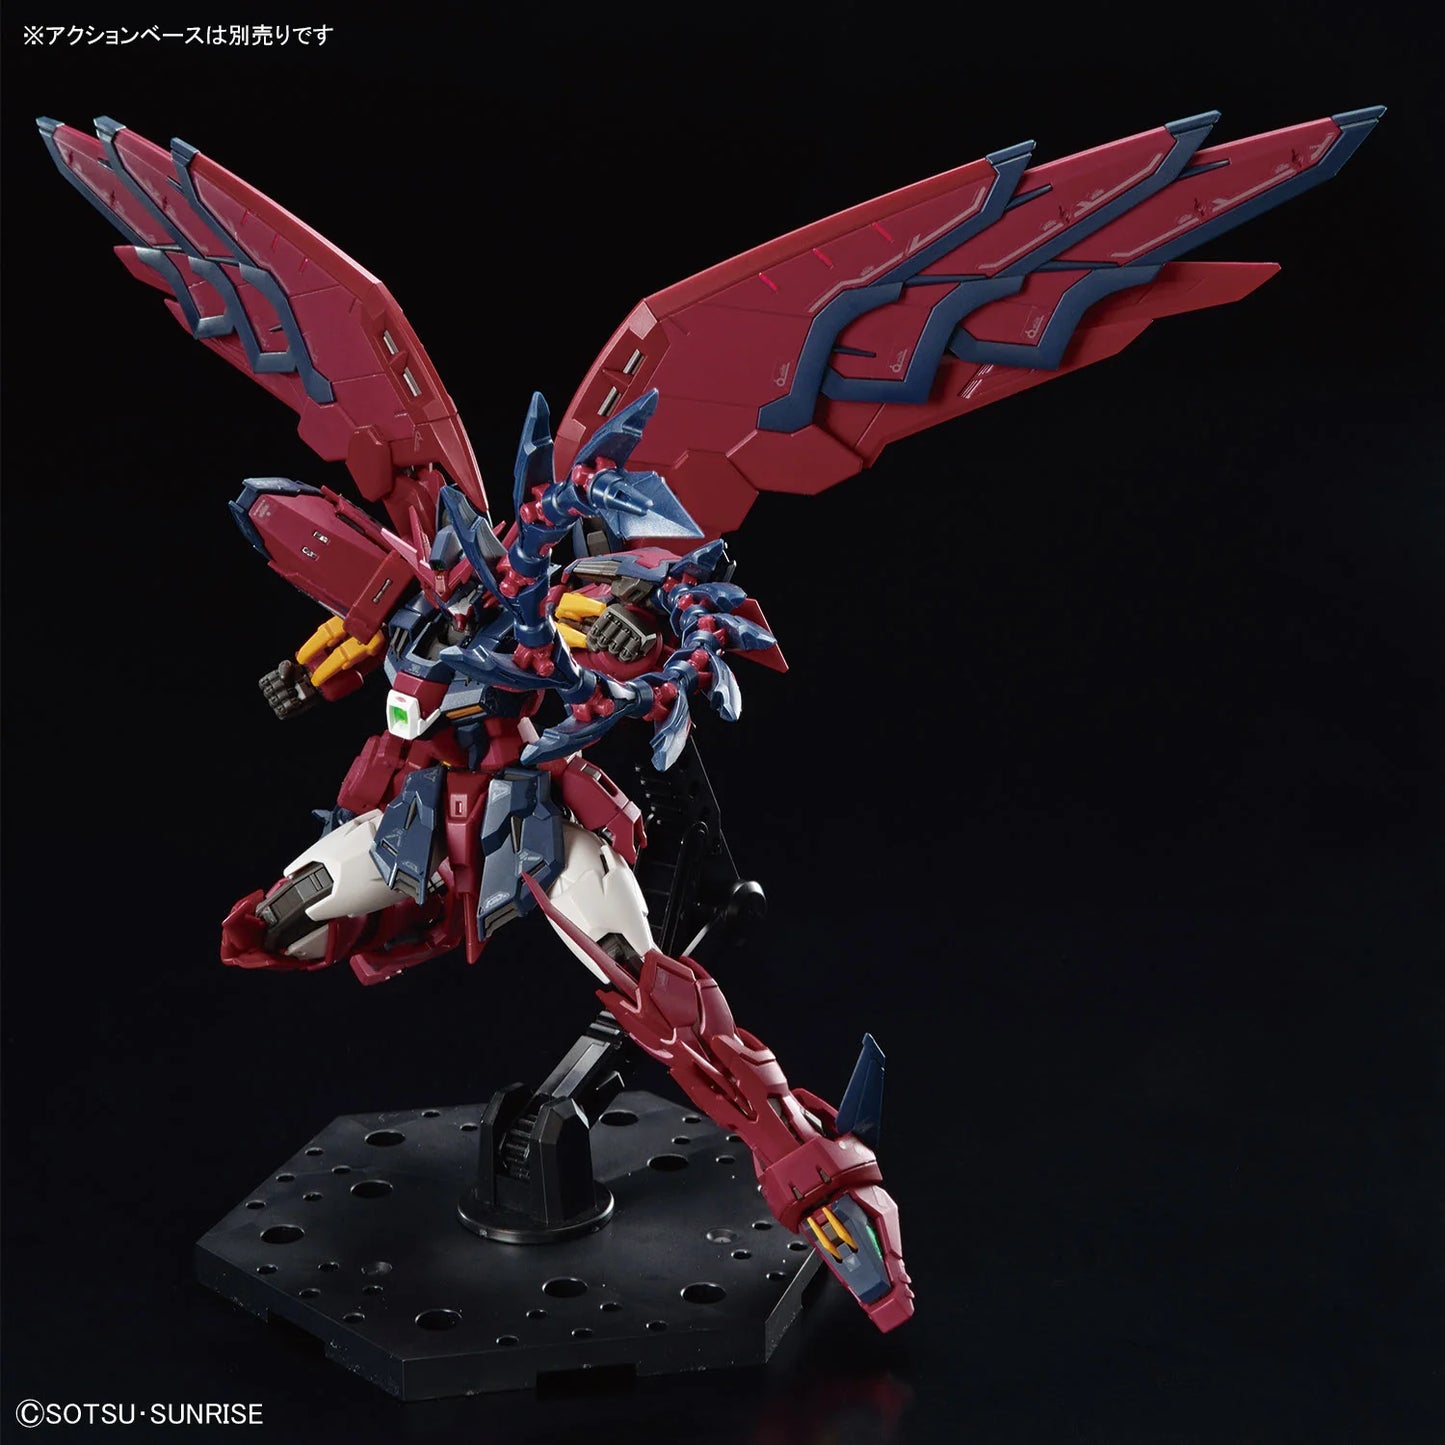 RG 38 Gundam Epyon 1/144